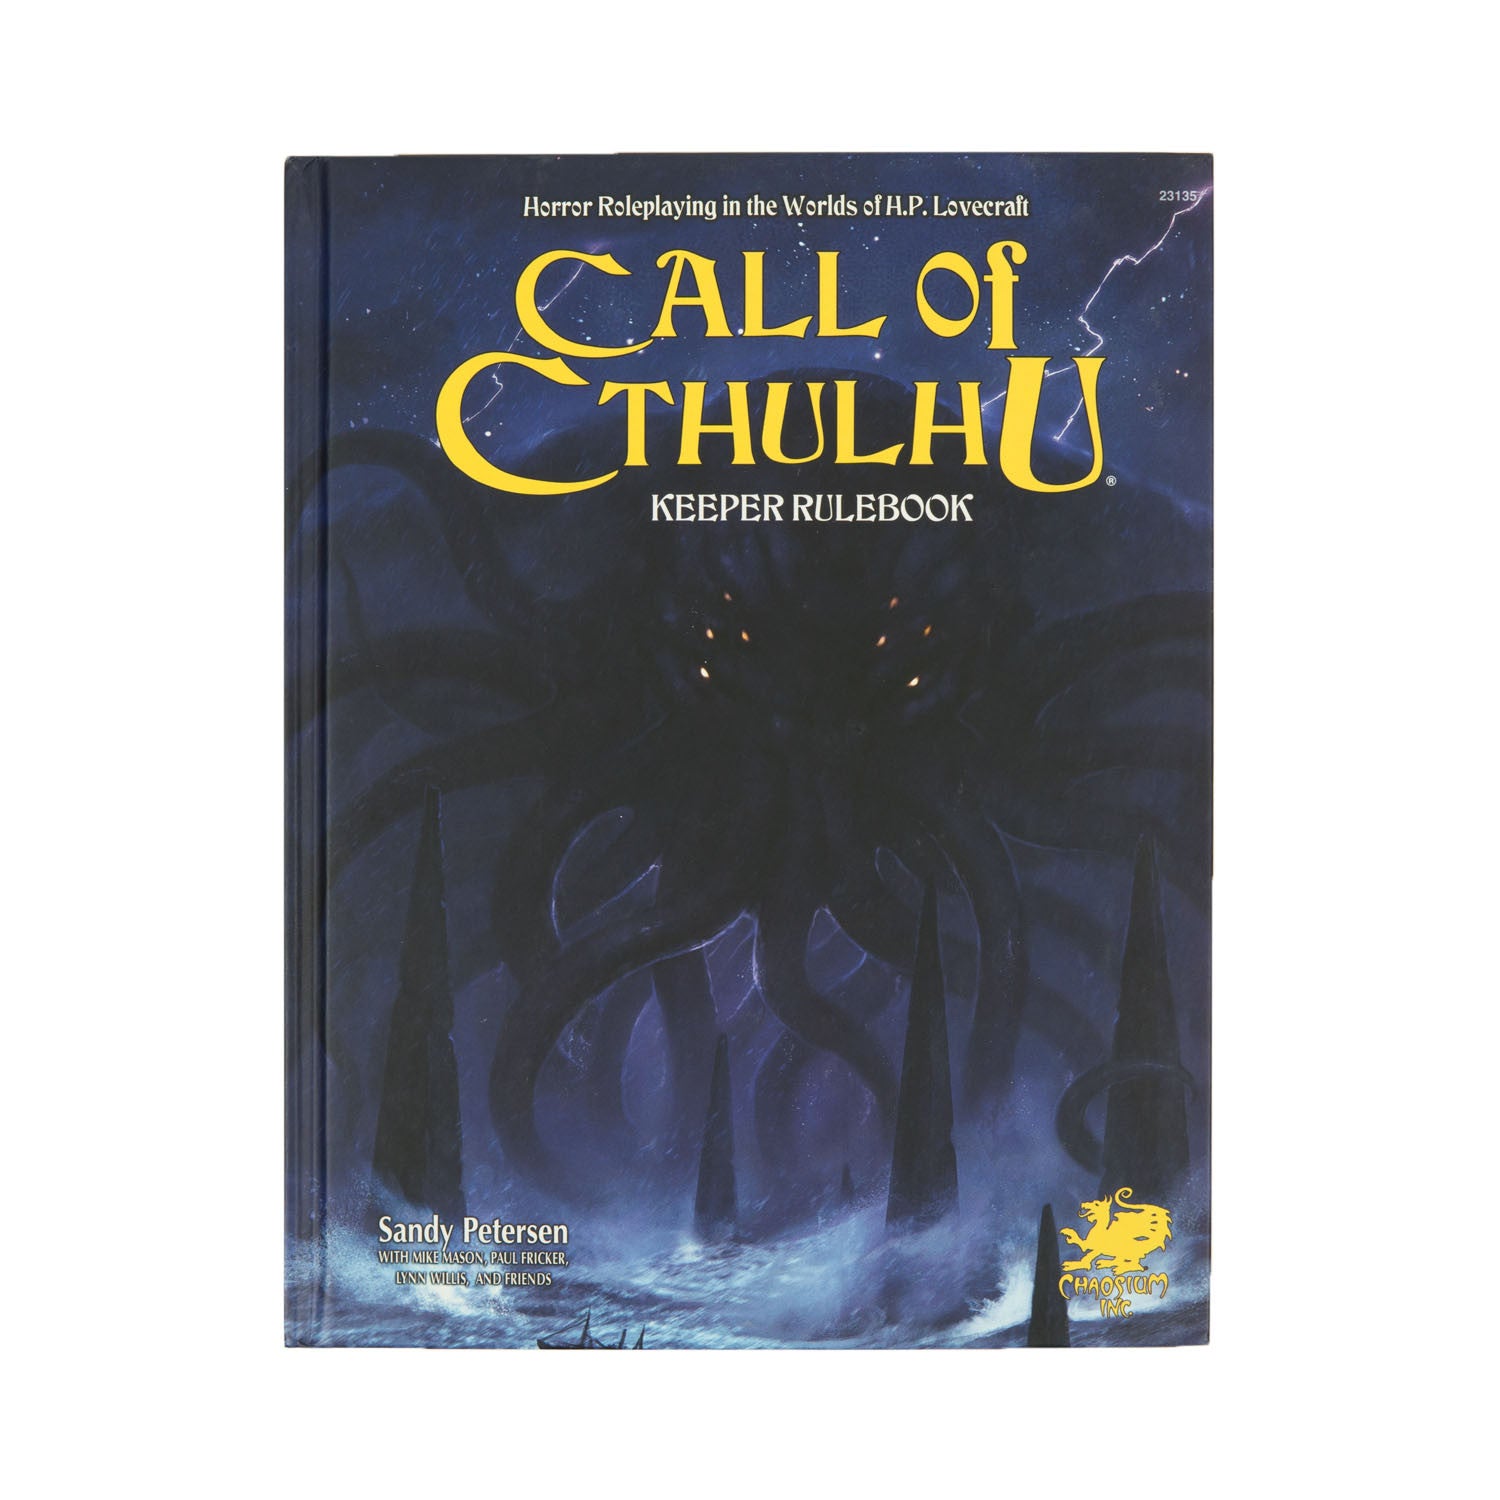 Call of Cthulhu RPG Keeper Rulebook 7th Ed. (Hard Cover)